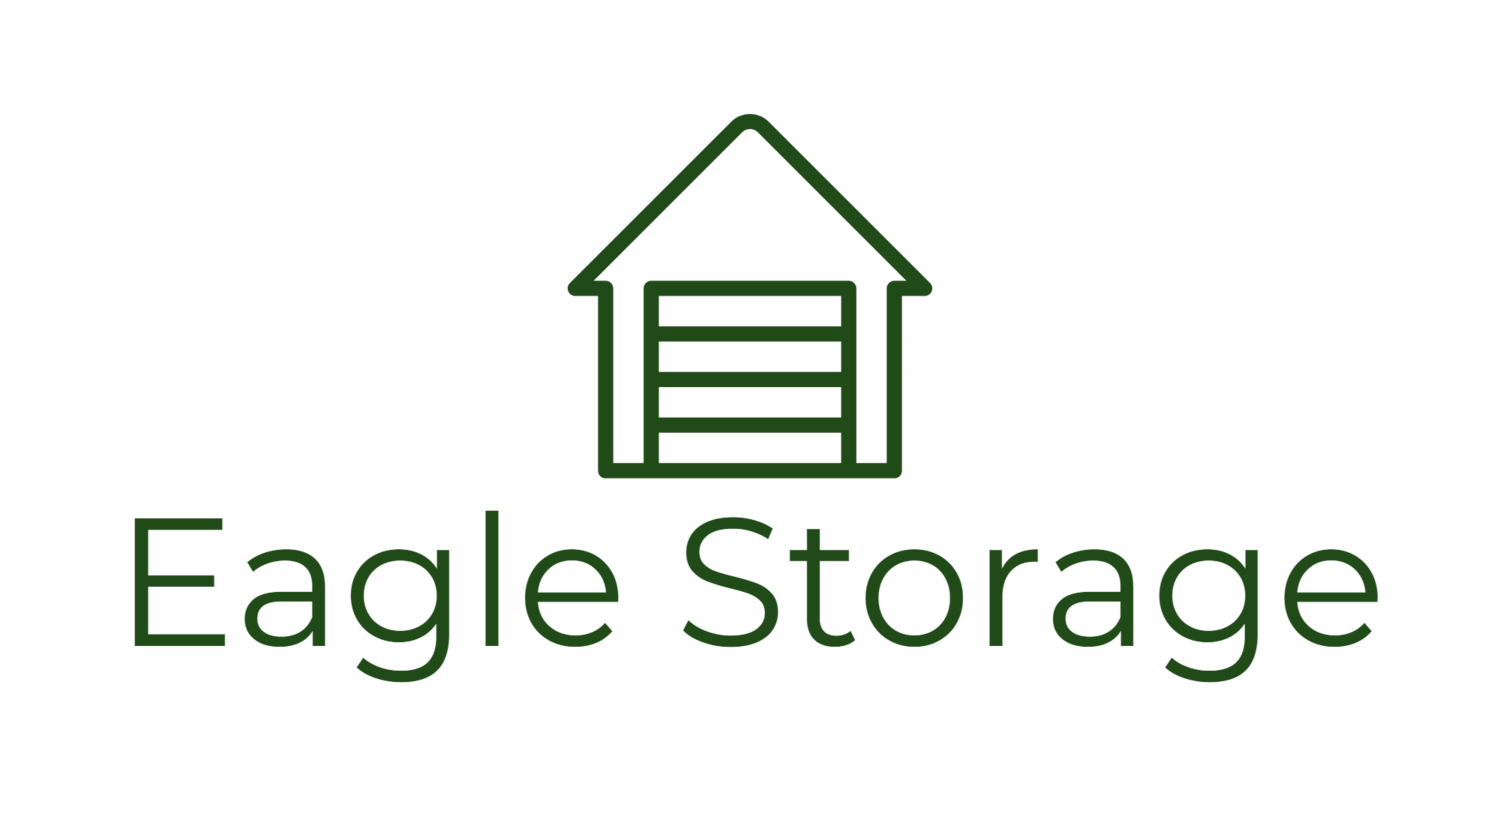 Eagle Storage- Affordable Storage Provider